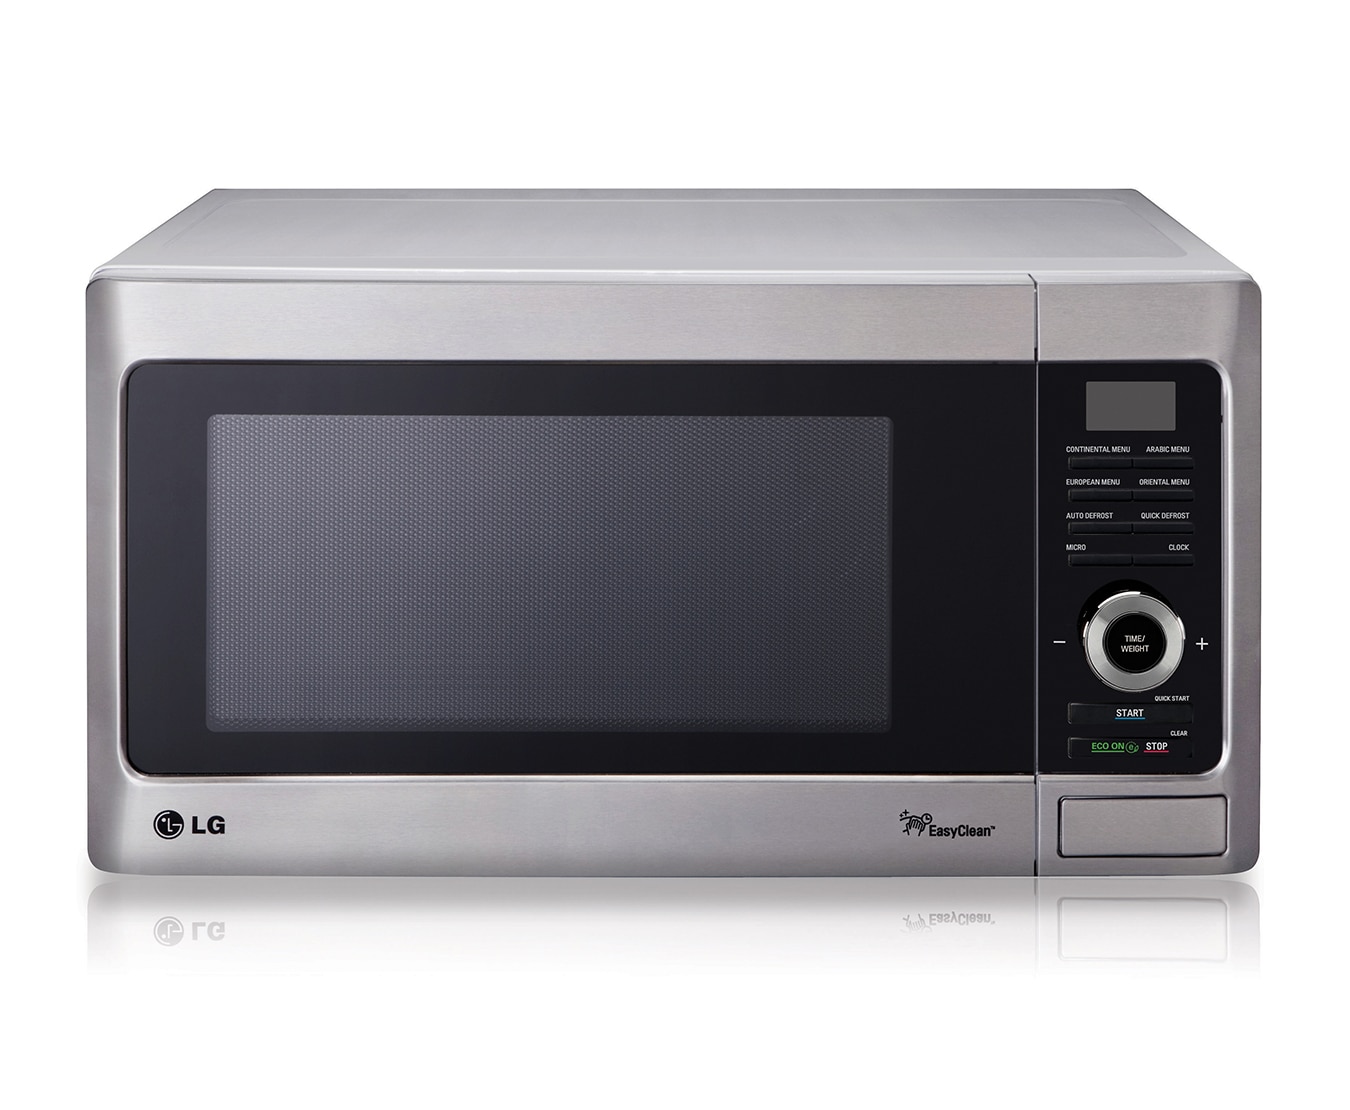 Модель свч. LG Microwave Oven. Микроволновая печь LG IWAVE. Микроволновка LG IWAVE ms2548drksy. Микроволновка LG ms2349.